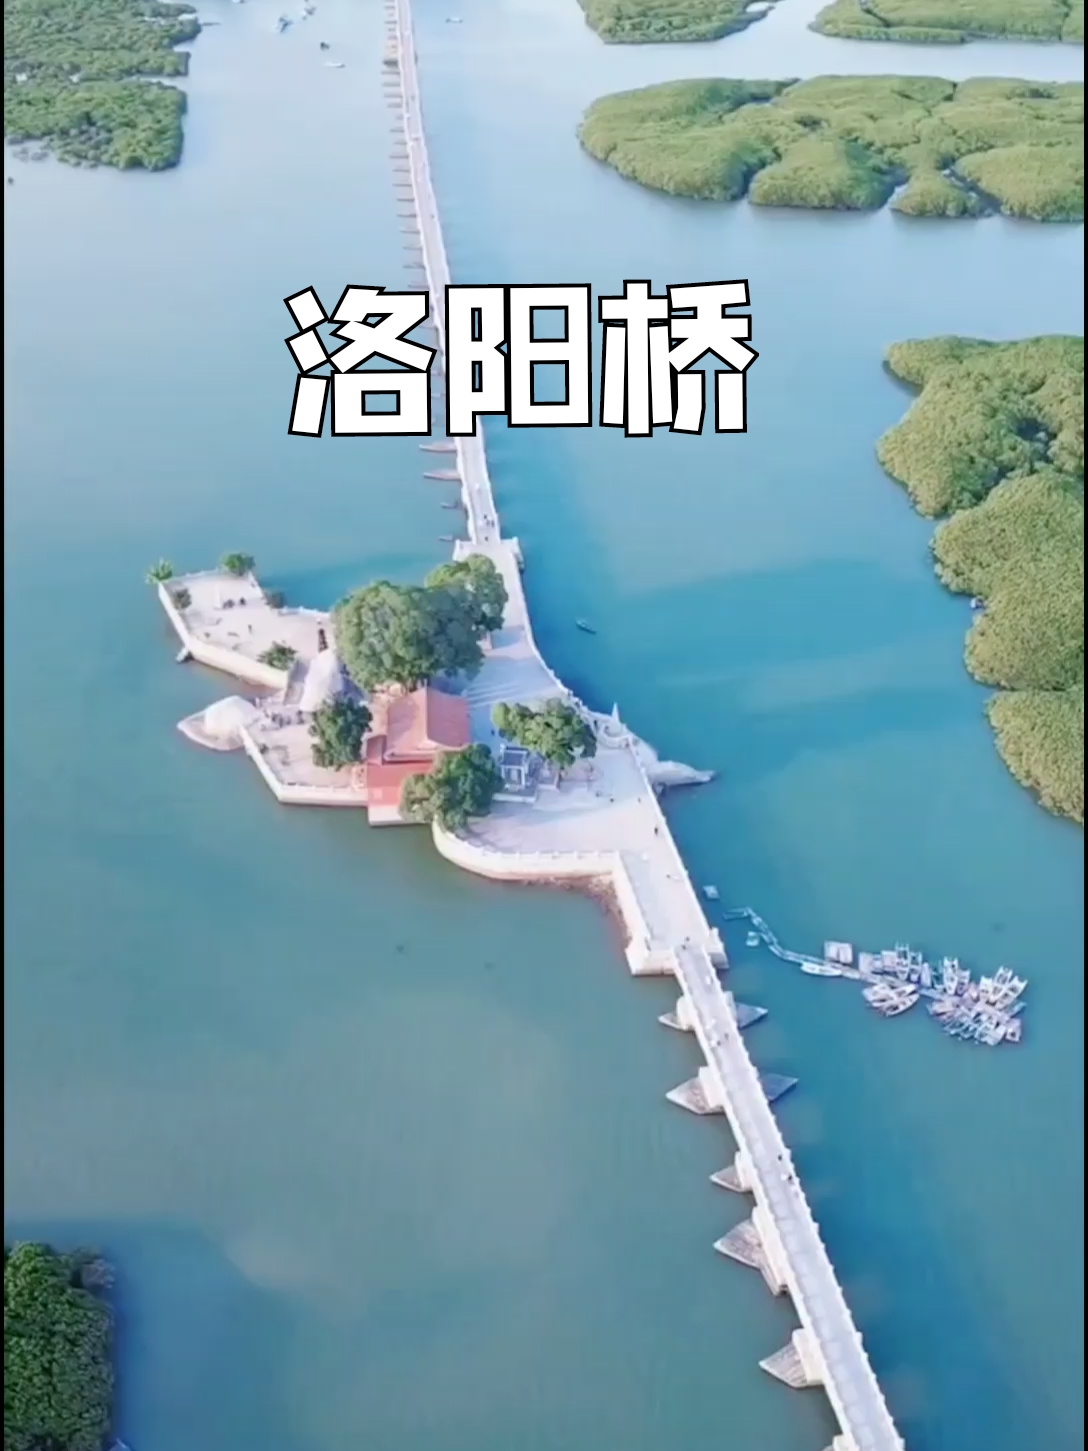 这座古桥竟是用牡蛎造的，而且桥屹立千年不倒，无数人感到不可思议！它就是中国古代四大名桥之一的的泉州洛